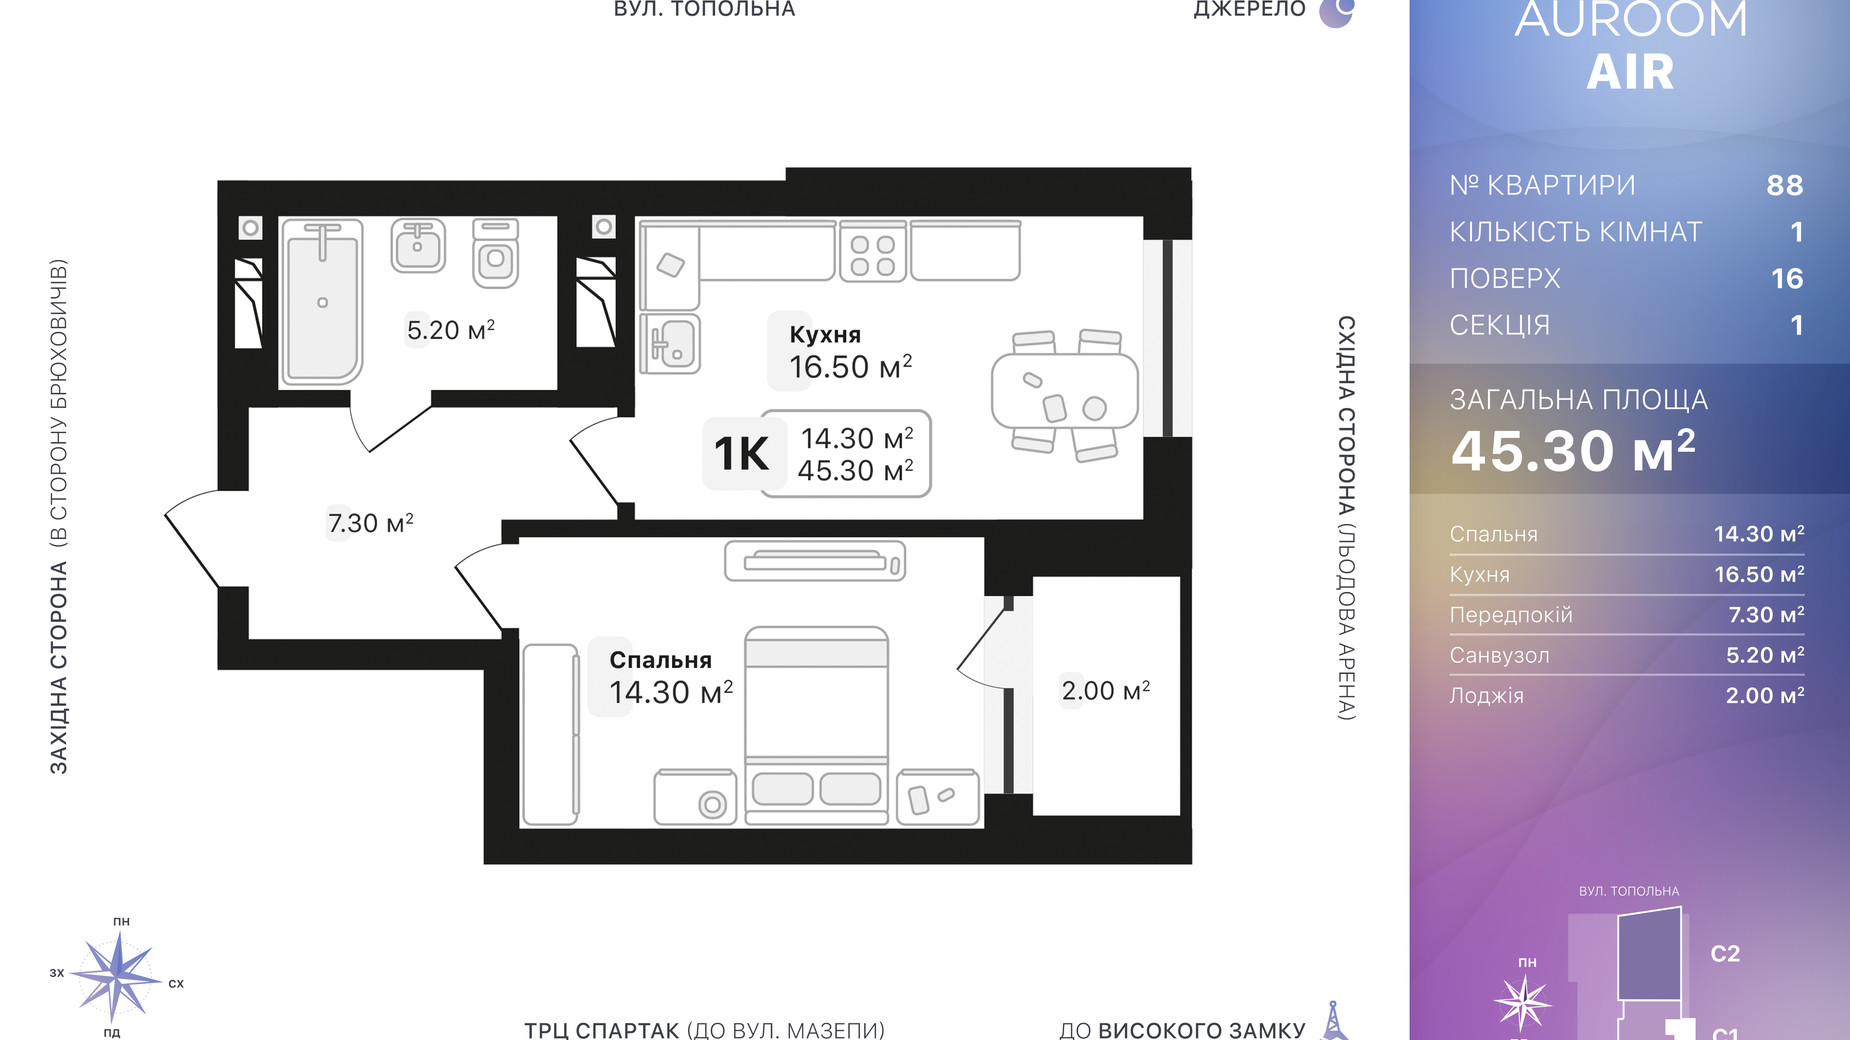 Планировка 1-комнатной квартиры в ЖК Auroom Air 45.3 м², фото 552326